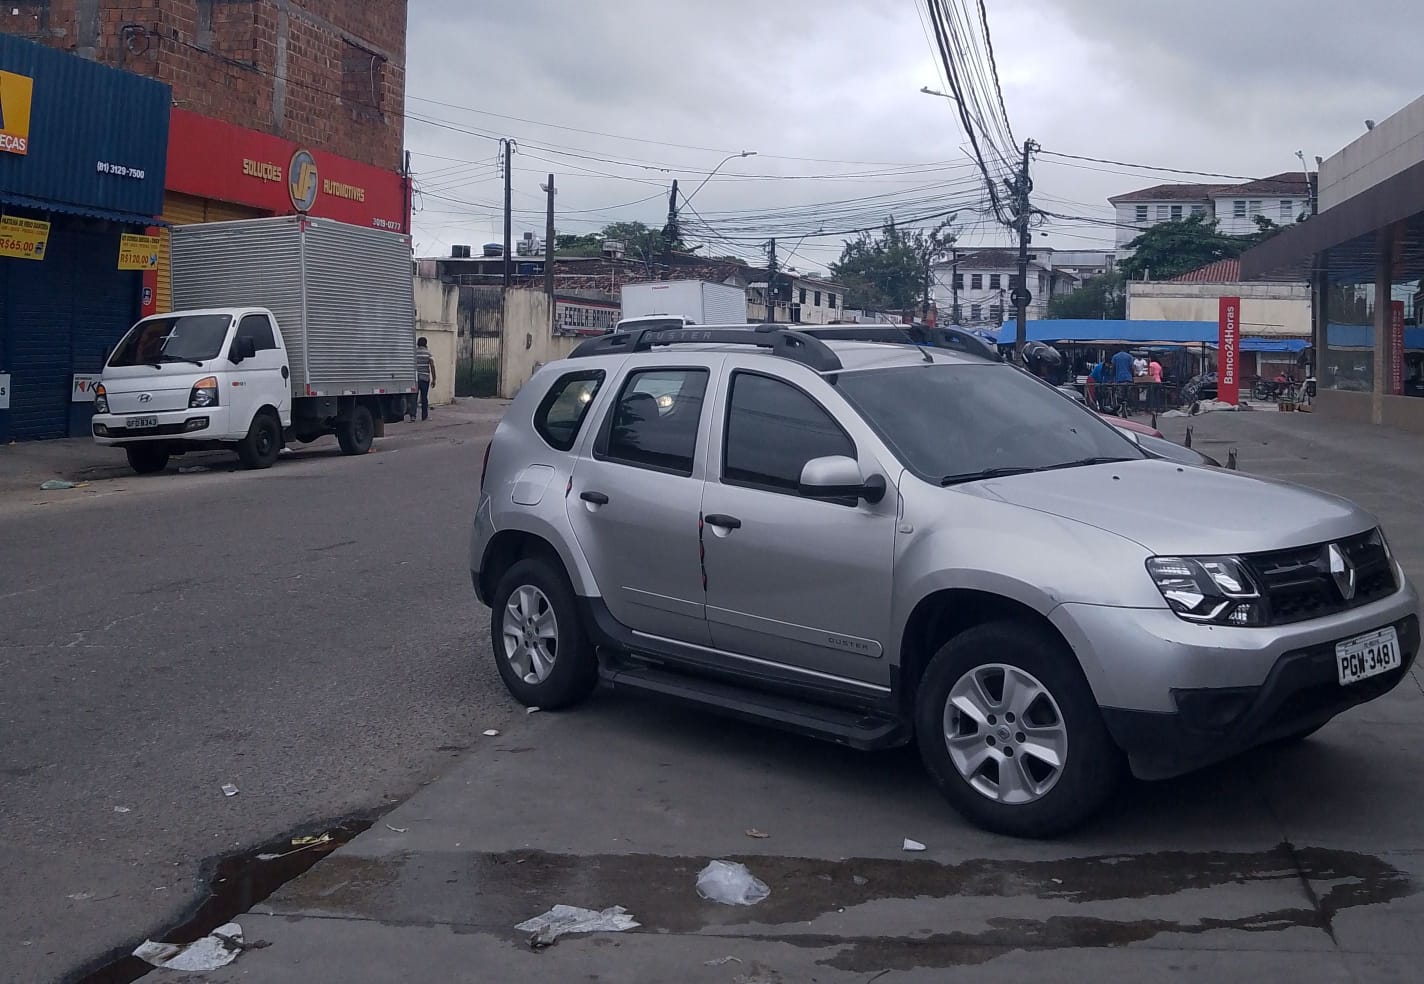 A discusso por uma vaga de estacionamento que culminou na morte do PM, aconteceu em frente a um supermercado, no bairro do Cordeiro, na Zona Oeste do Recife  (Wilson Maranho/DP)